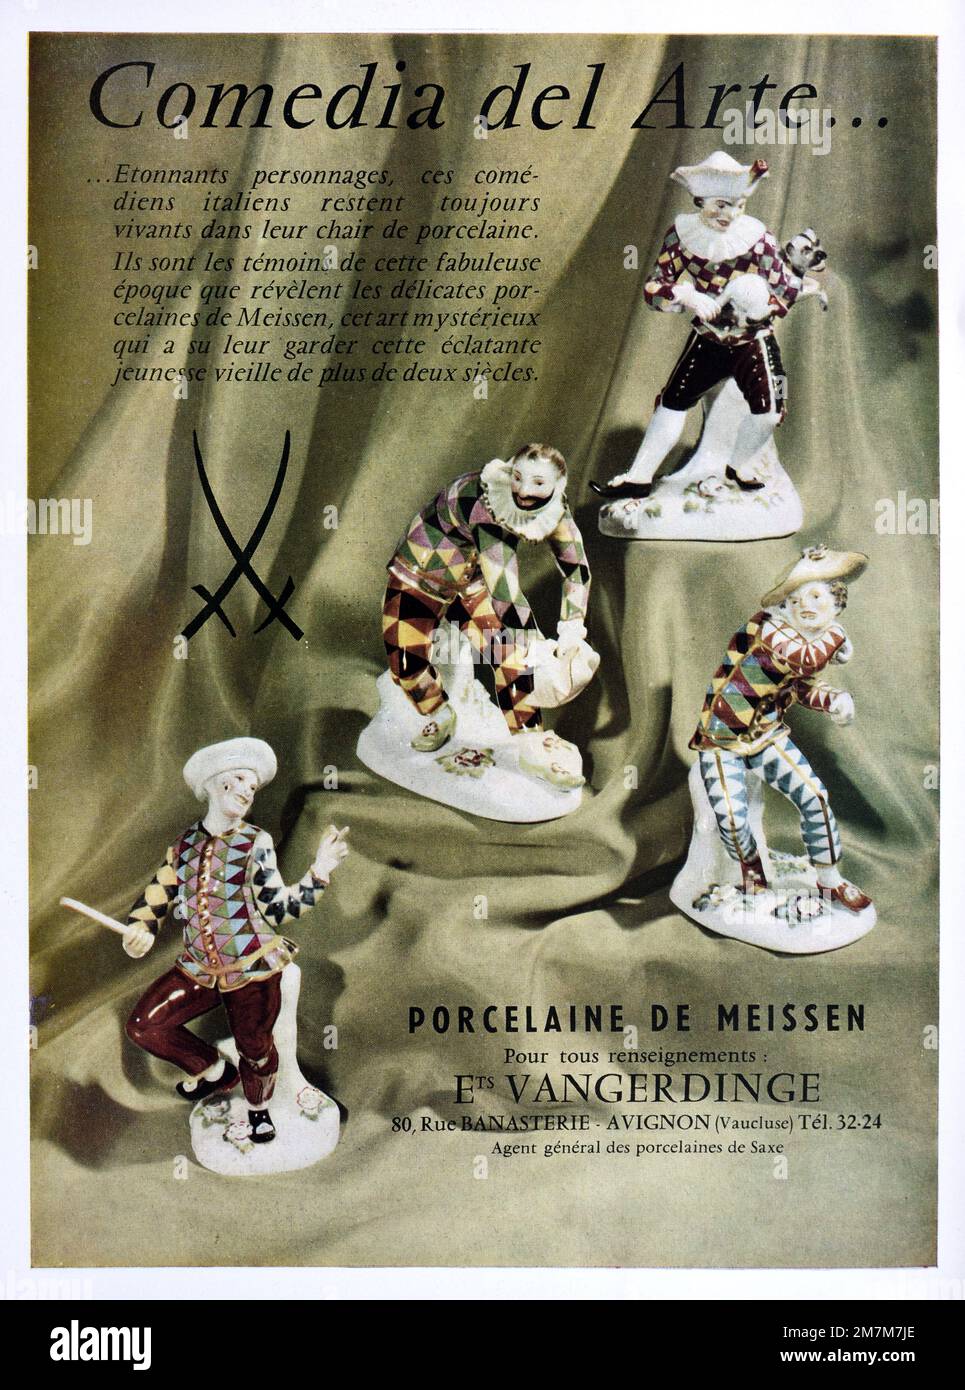 Vintage o antiguo anuncio, publicidad o ilustración para porcelana de Meissen o Meissen China con Commedia dell'Arte o Comedia del Arte figuras o figuras 1956 Foto de stock